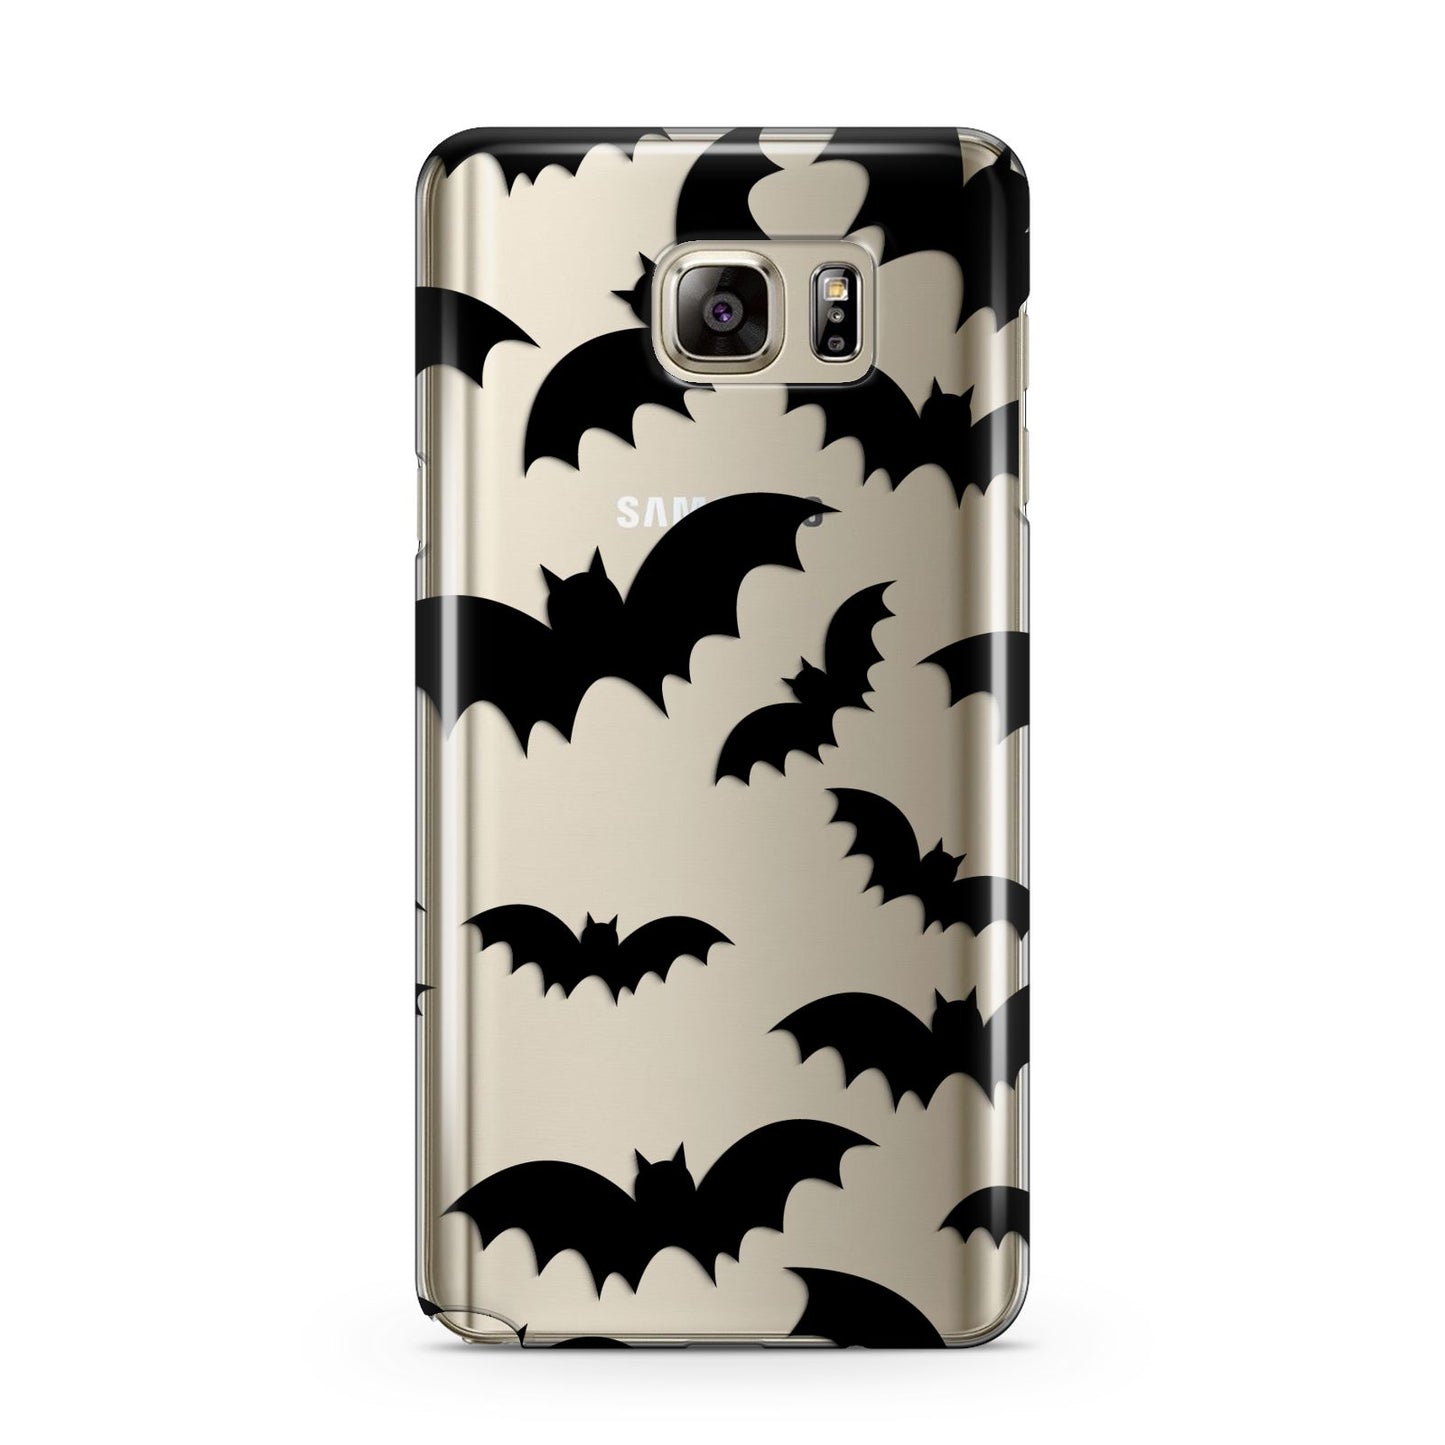 Bat Halloween Print Samsung Galaxy Note 5 Case